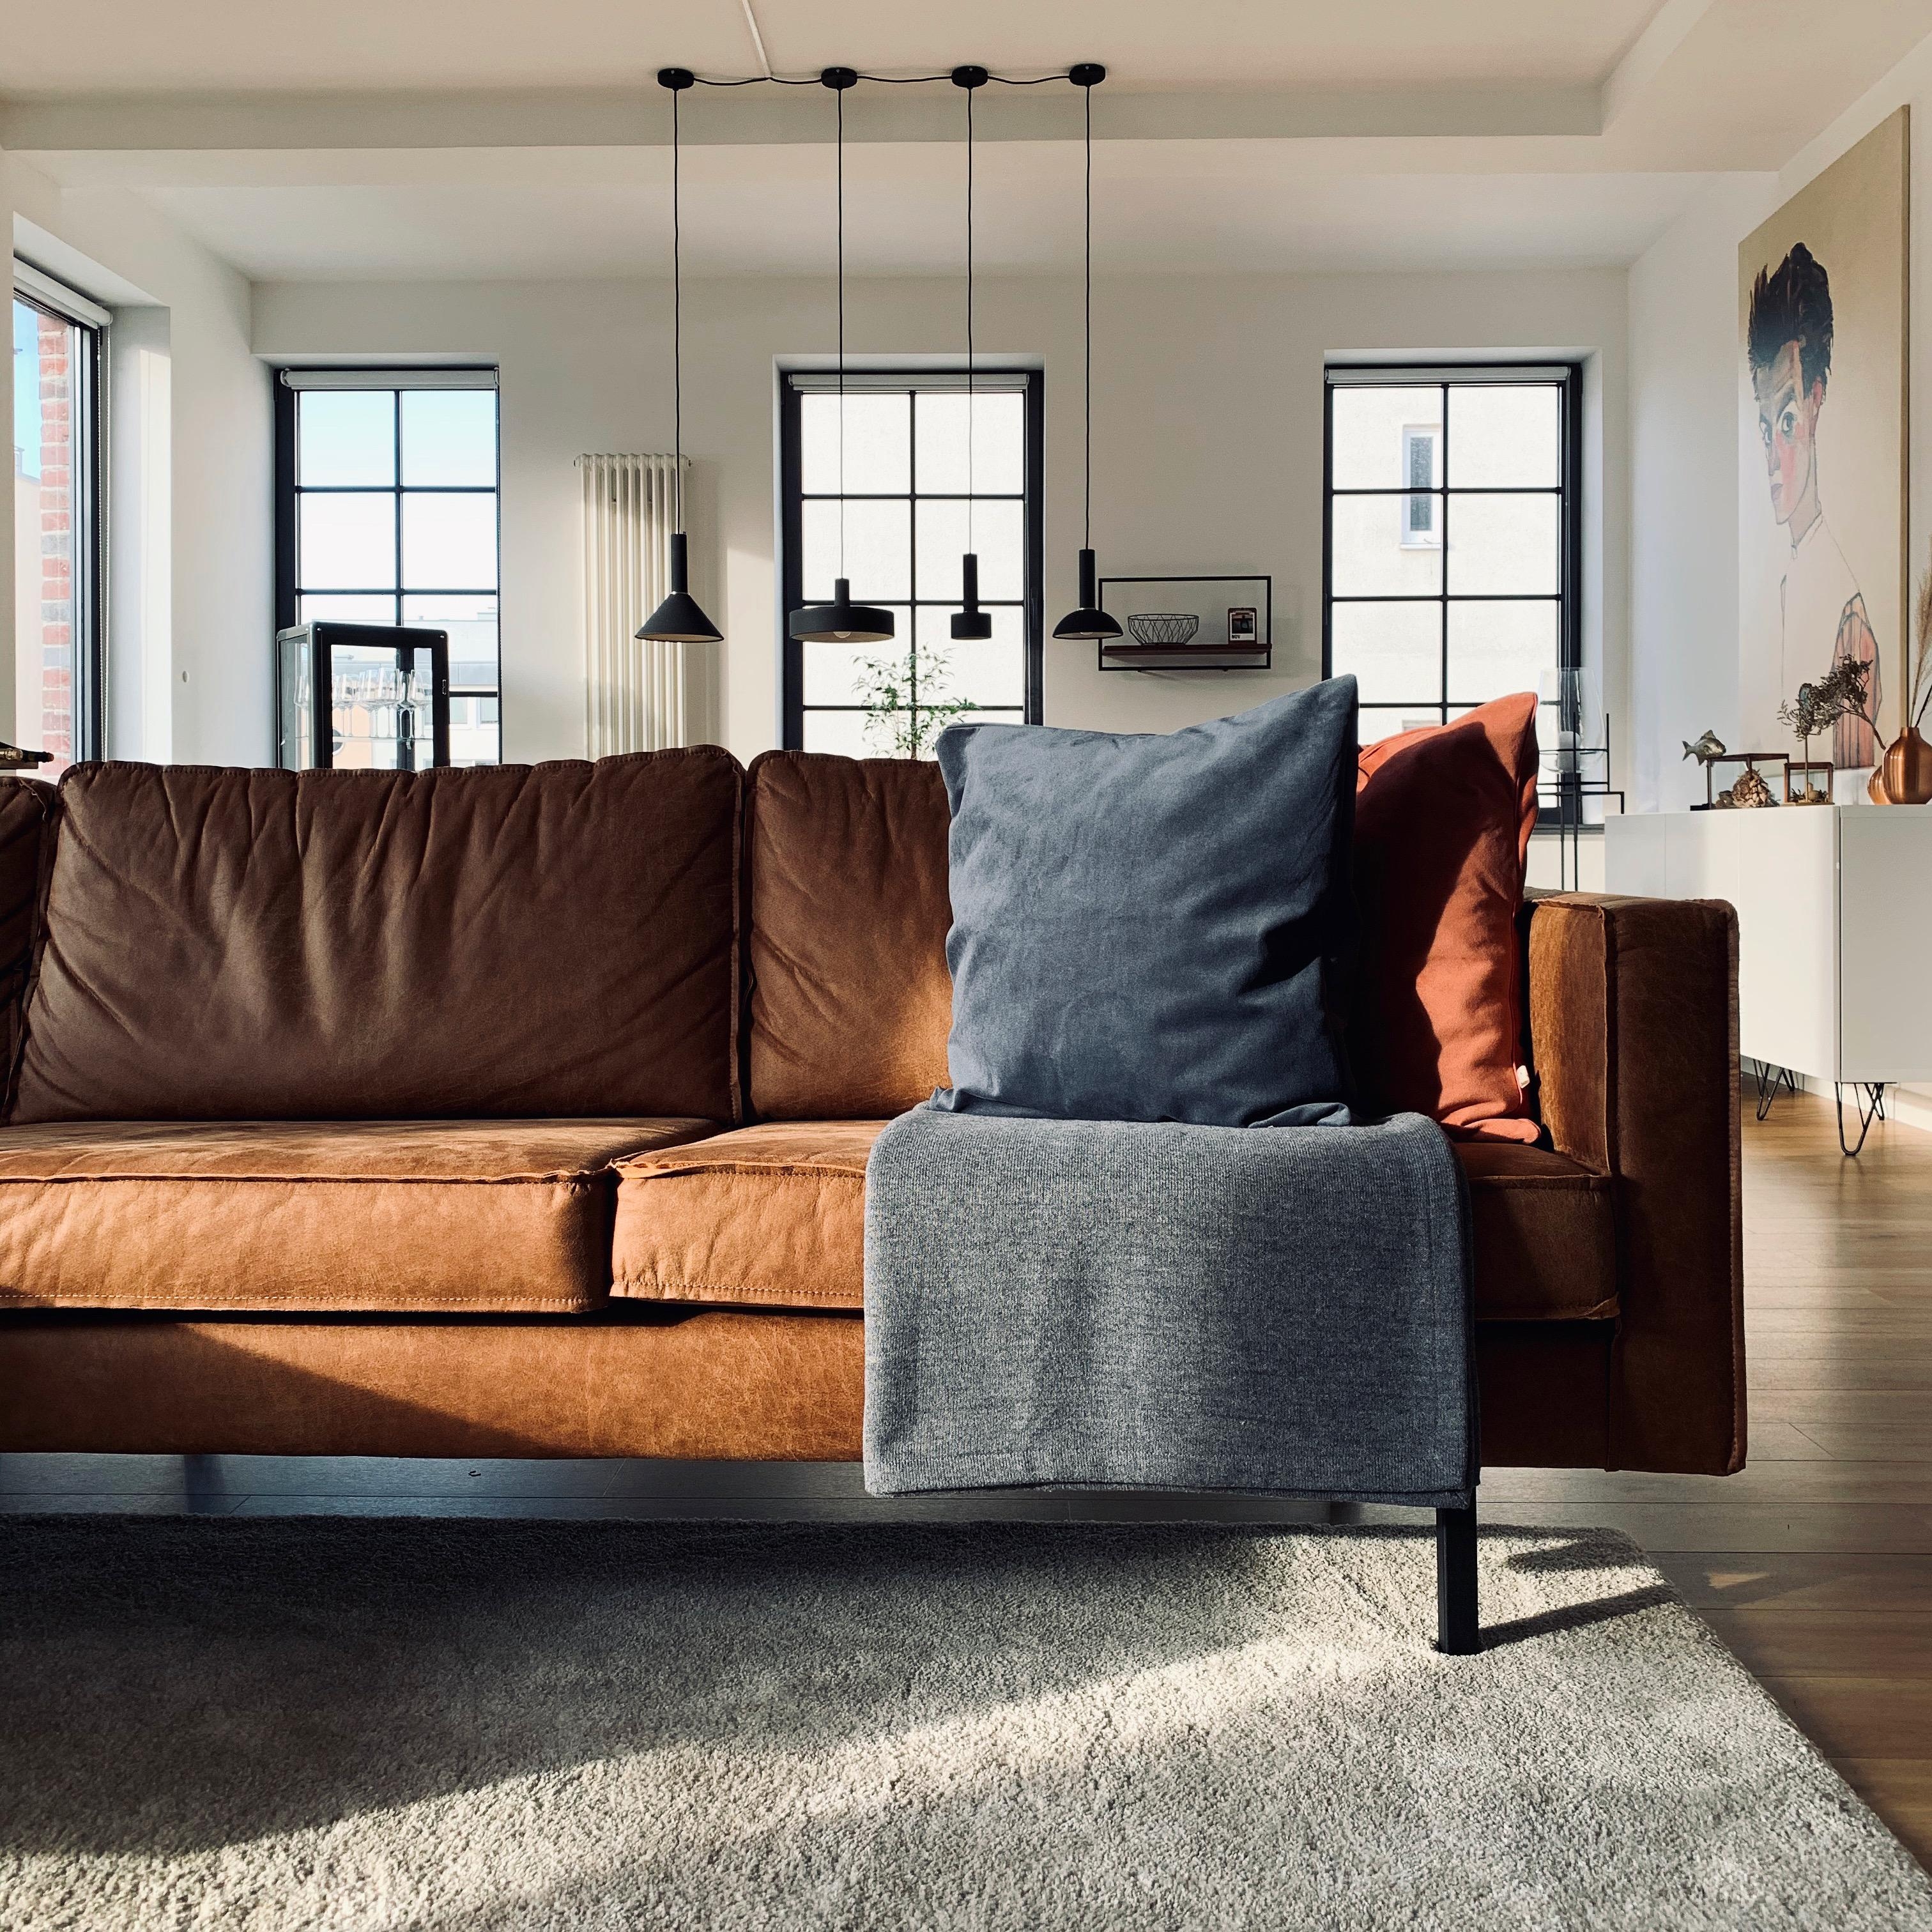 Gleich gibts Kaffee und Kuchen auf der Couch. Habt einen schönen Nachmittag 🍁☀️

#couchstyle #ledercouch #wohnzimmer